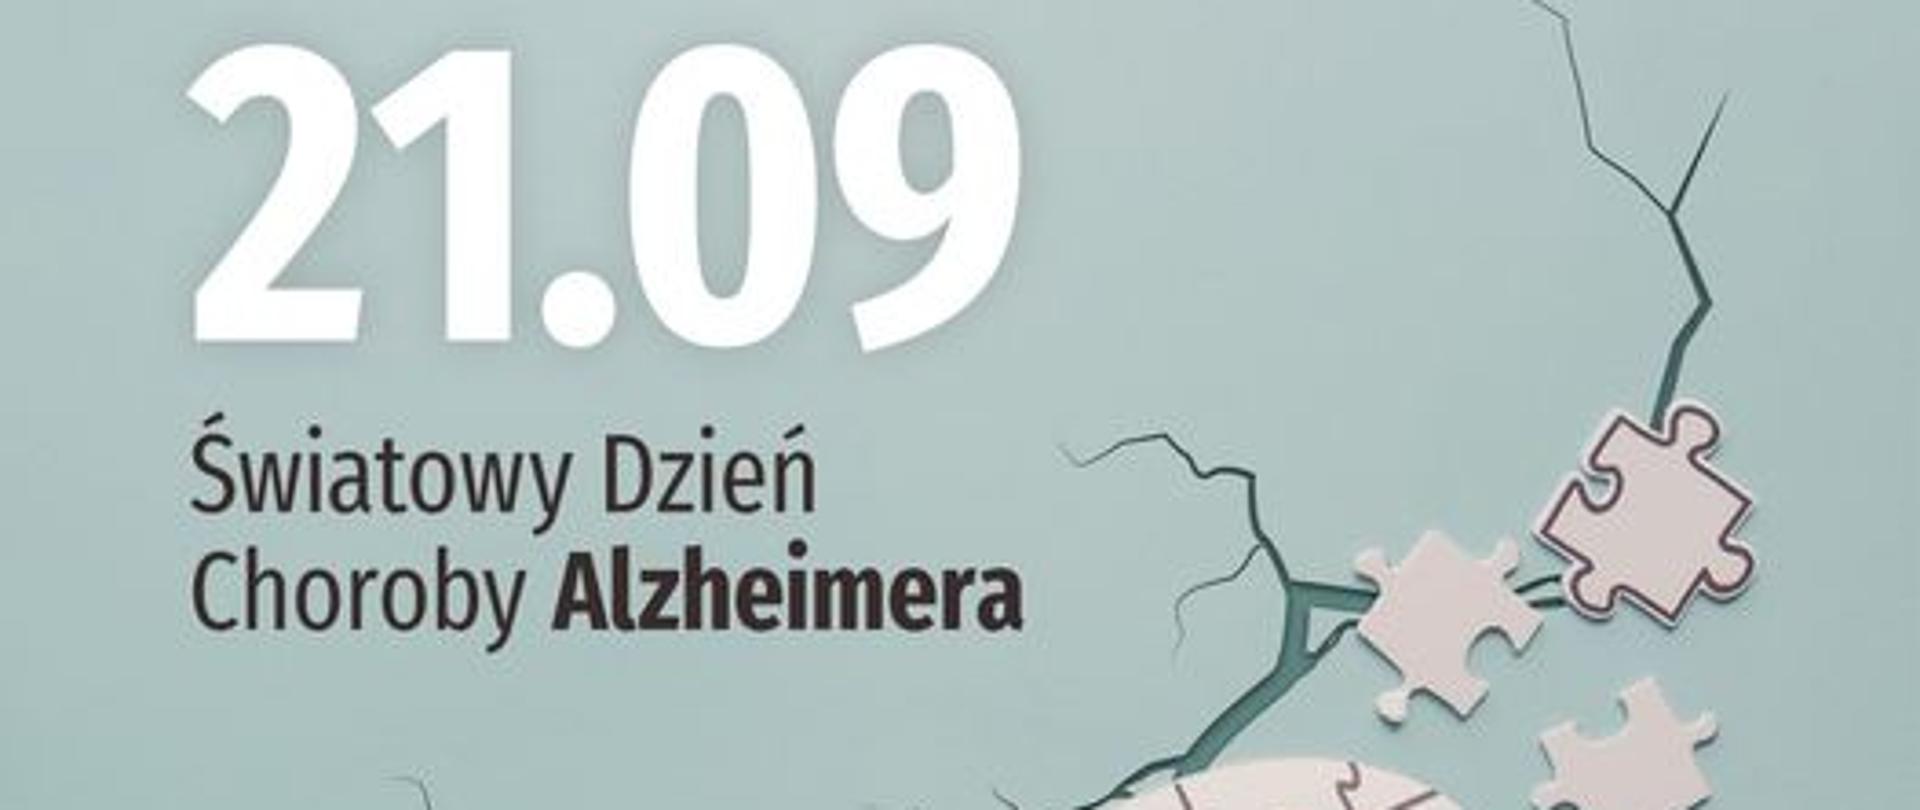 21.09 obchodzimy Światowy Dzień Choroby Alzheimera